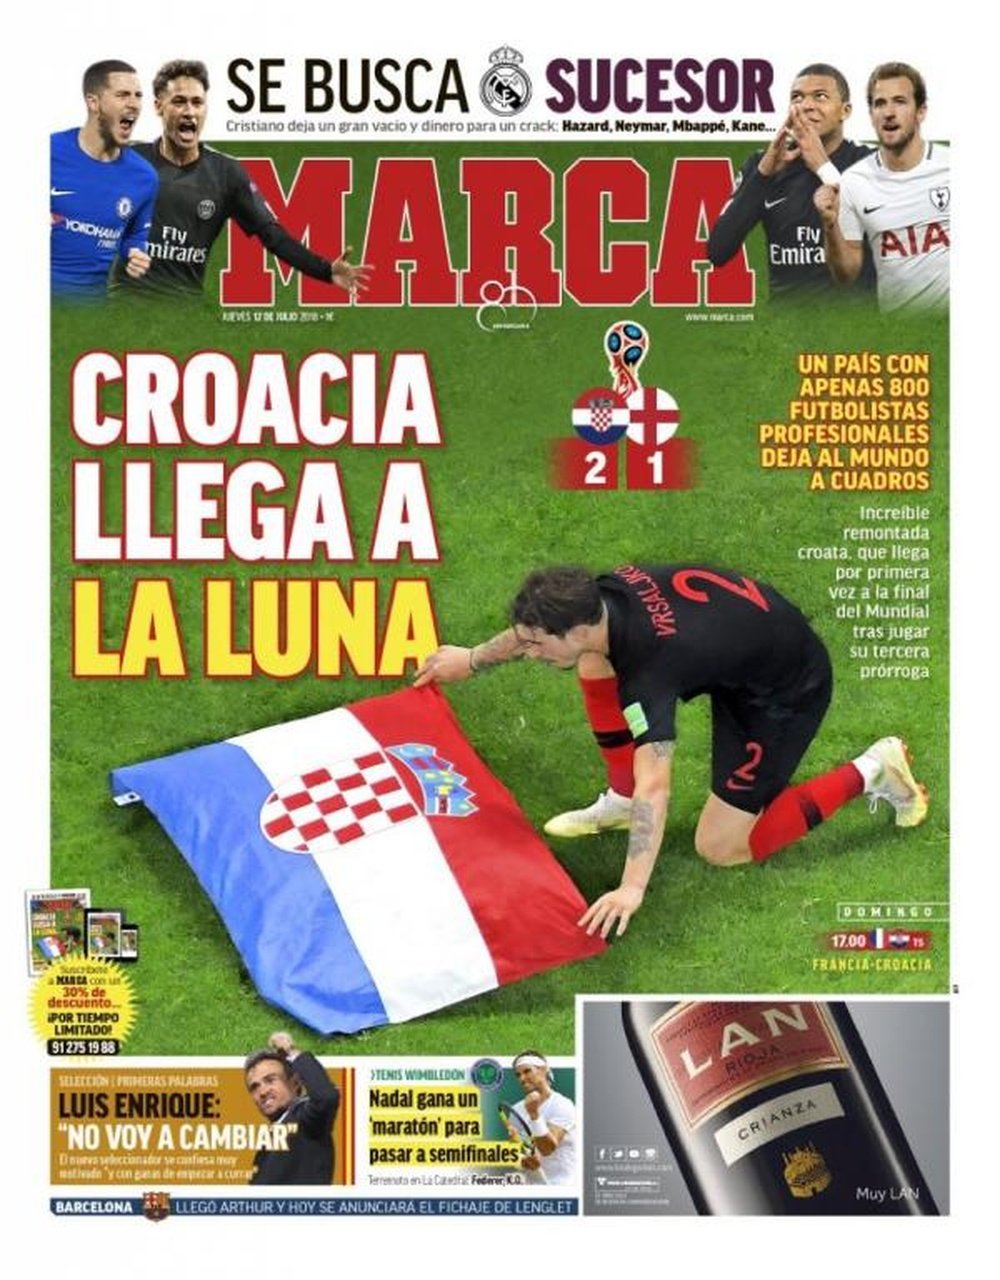 Le sjournaux espagnols sont voués à la cause de la Croatie. MArca